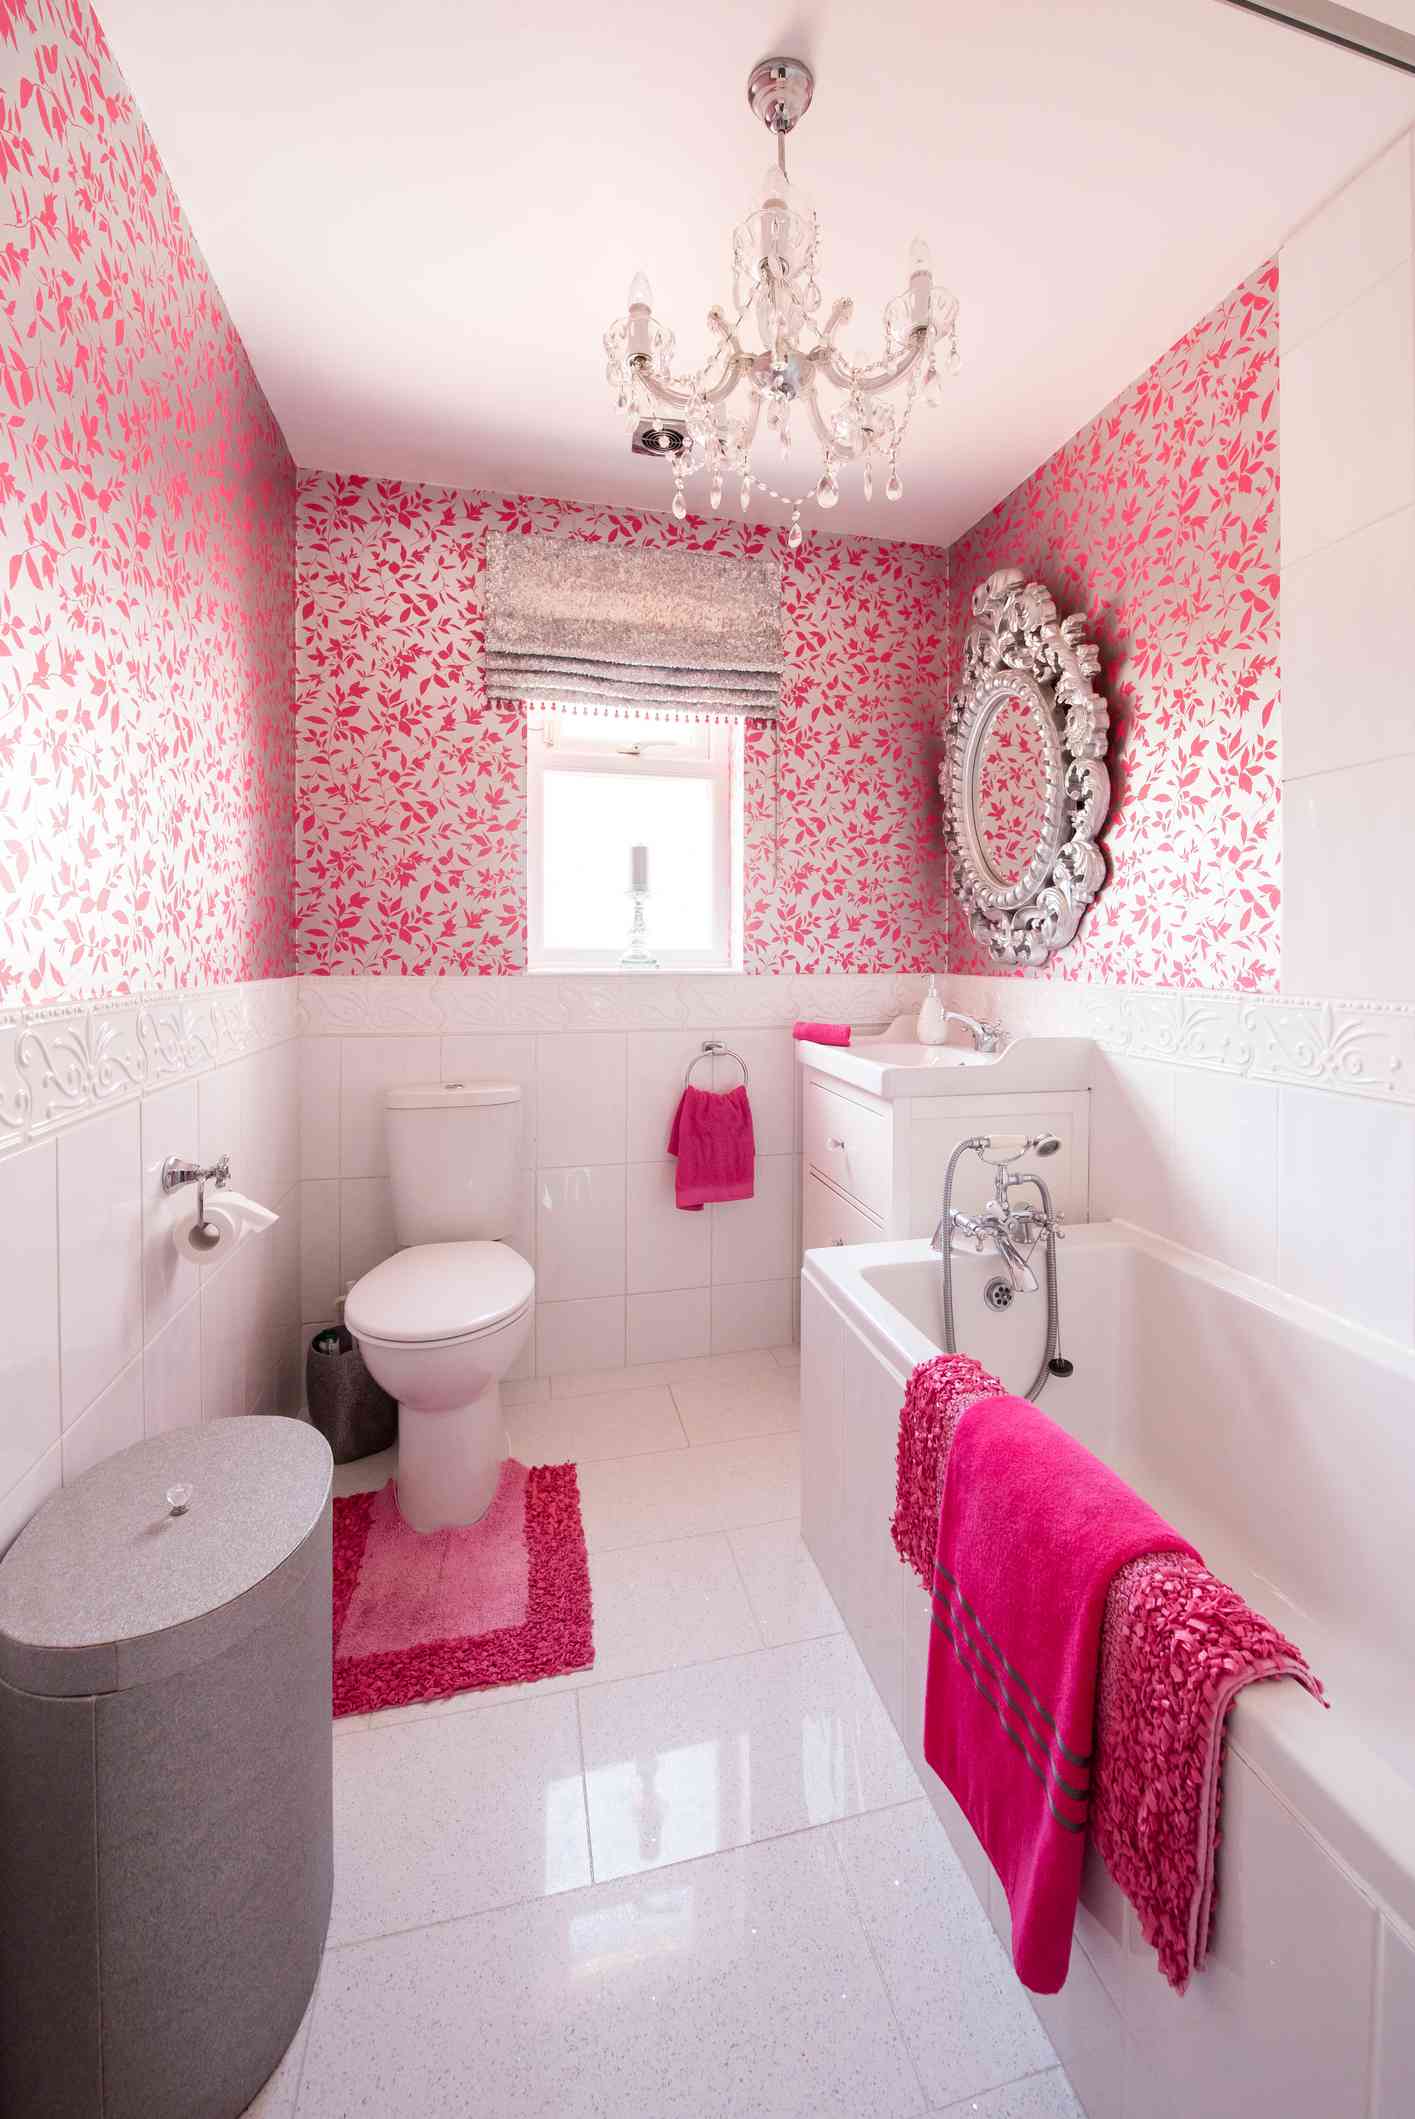 Salle de bains rose avec lustre et miroir orné